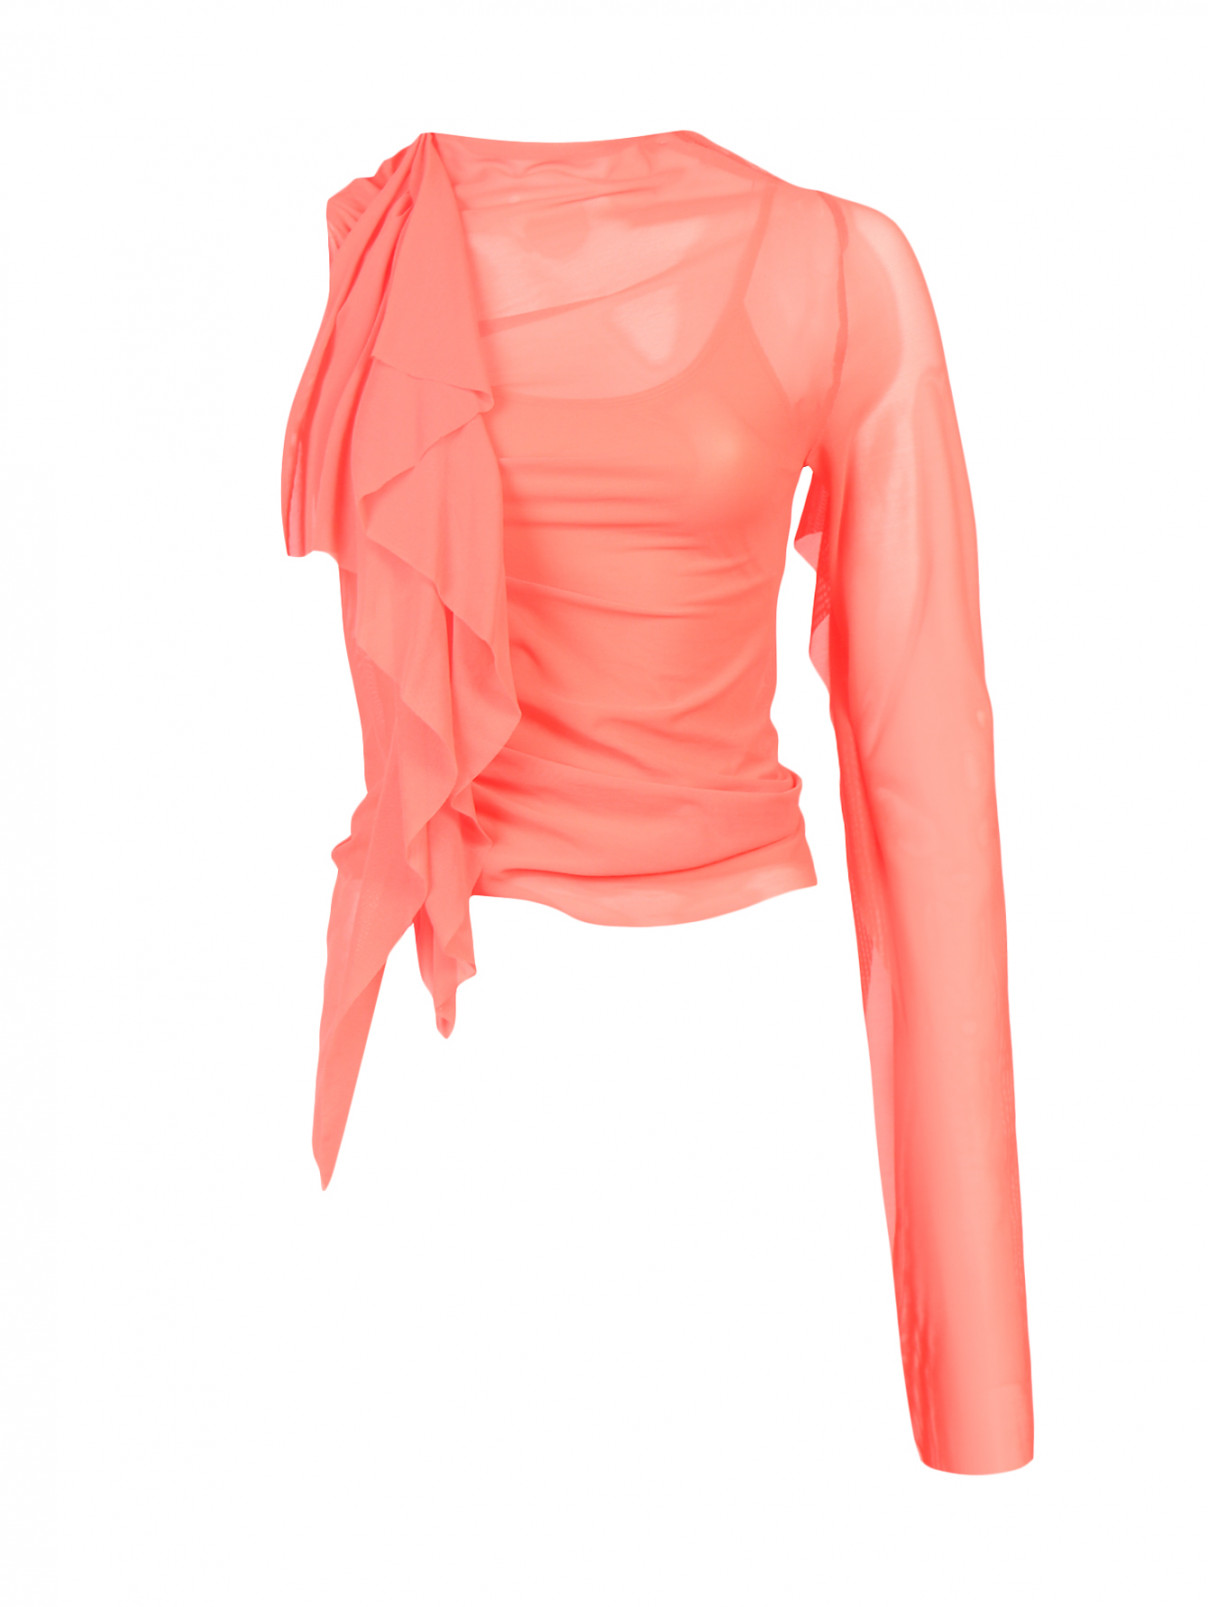 Топ из сетки асимметричного кроя с драпировкой Maison Margiela  –  Общий вид  – Цвет:  Оранжевый